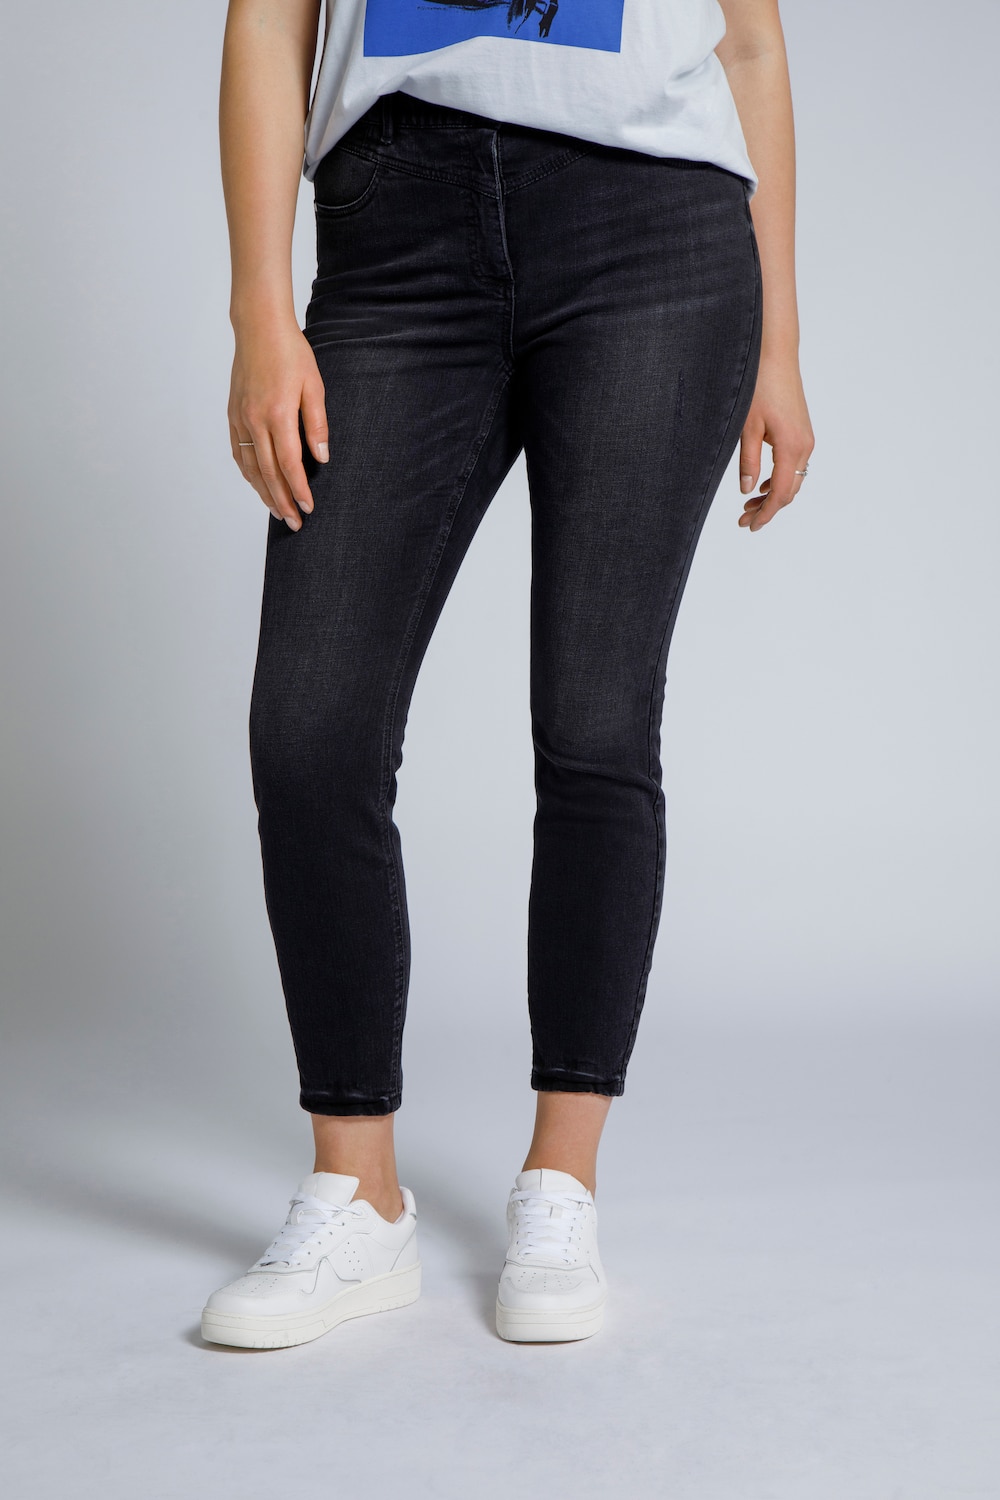 Grote Maten skinny jeans, Dames, zwart, Maat: 48, Katoen, Studio Untold